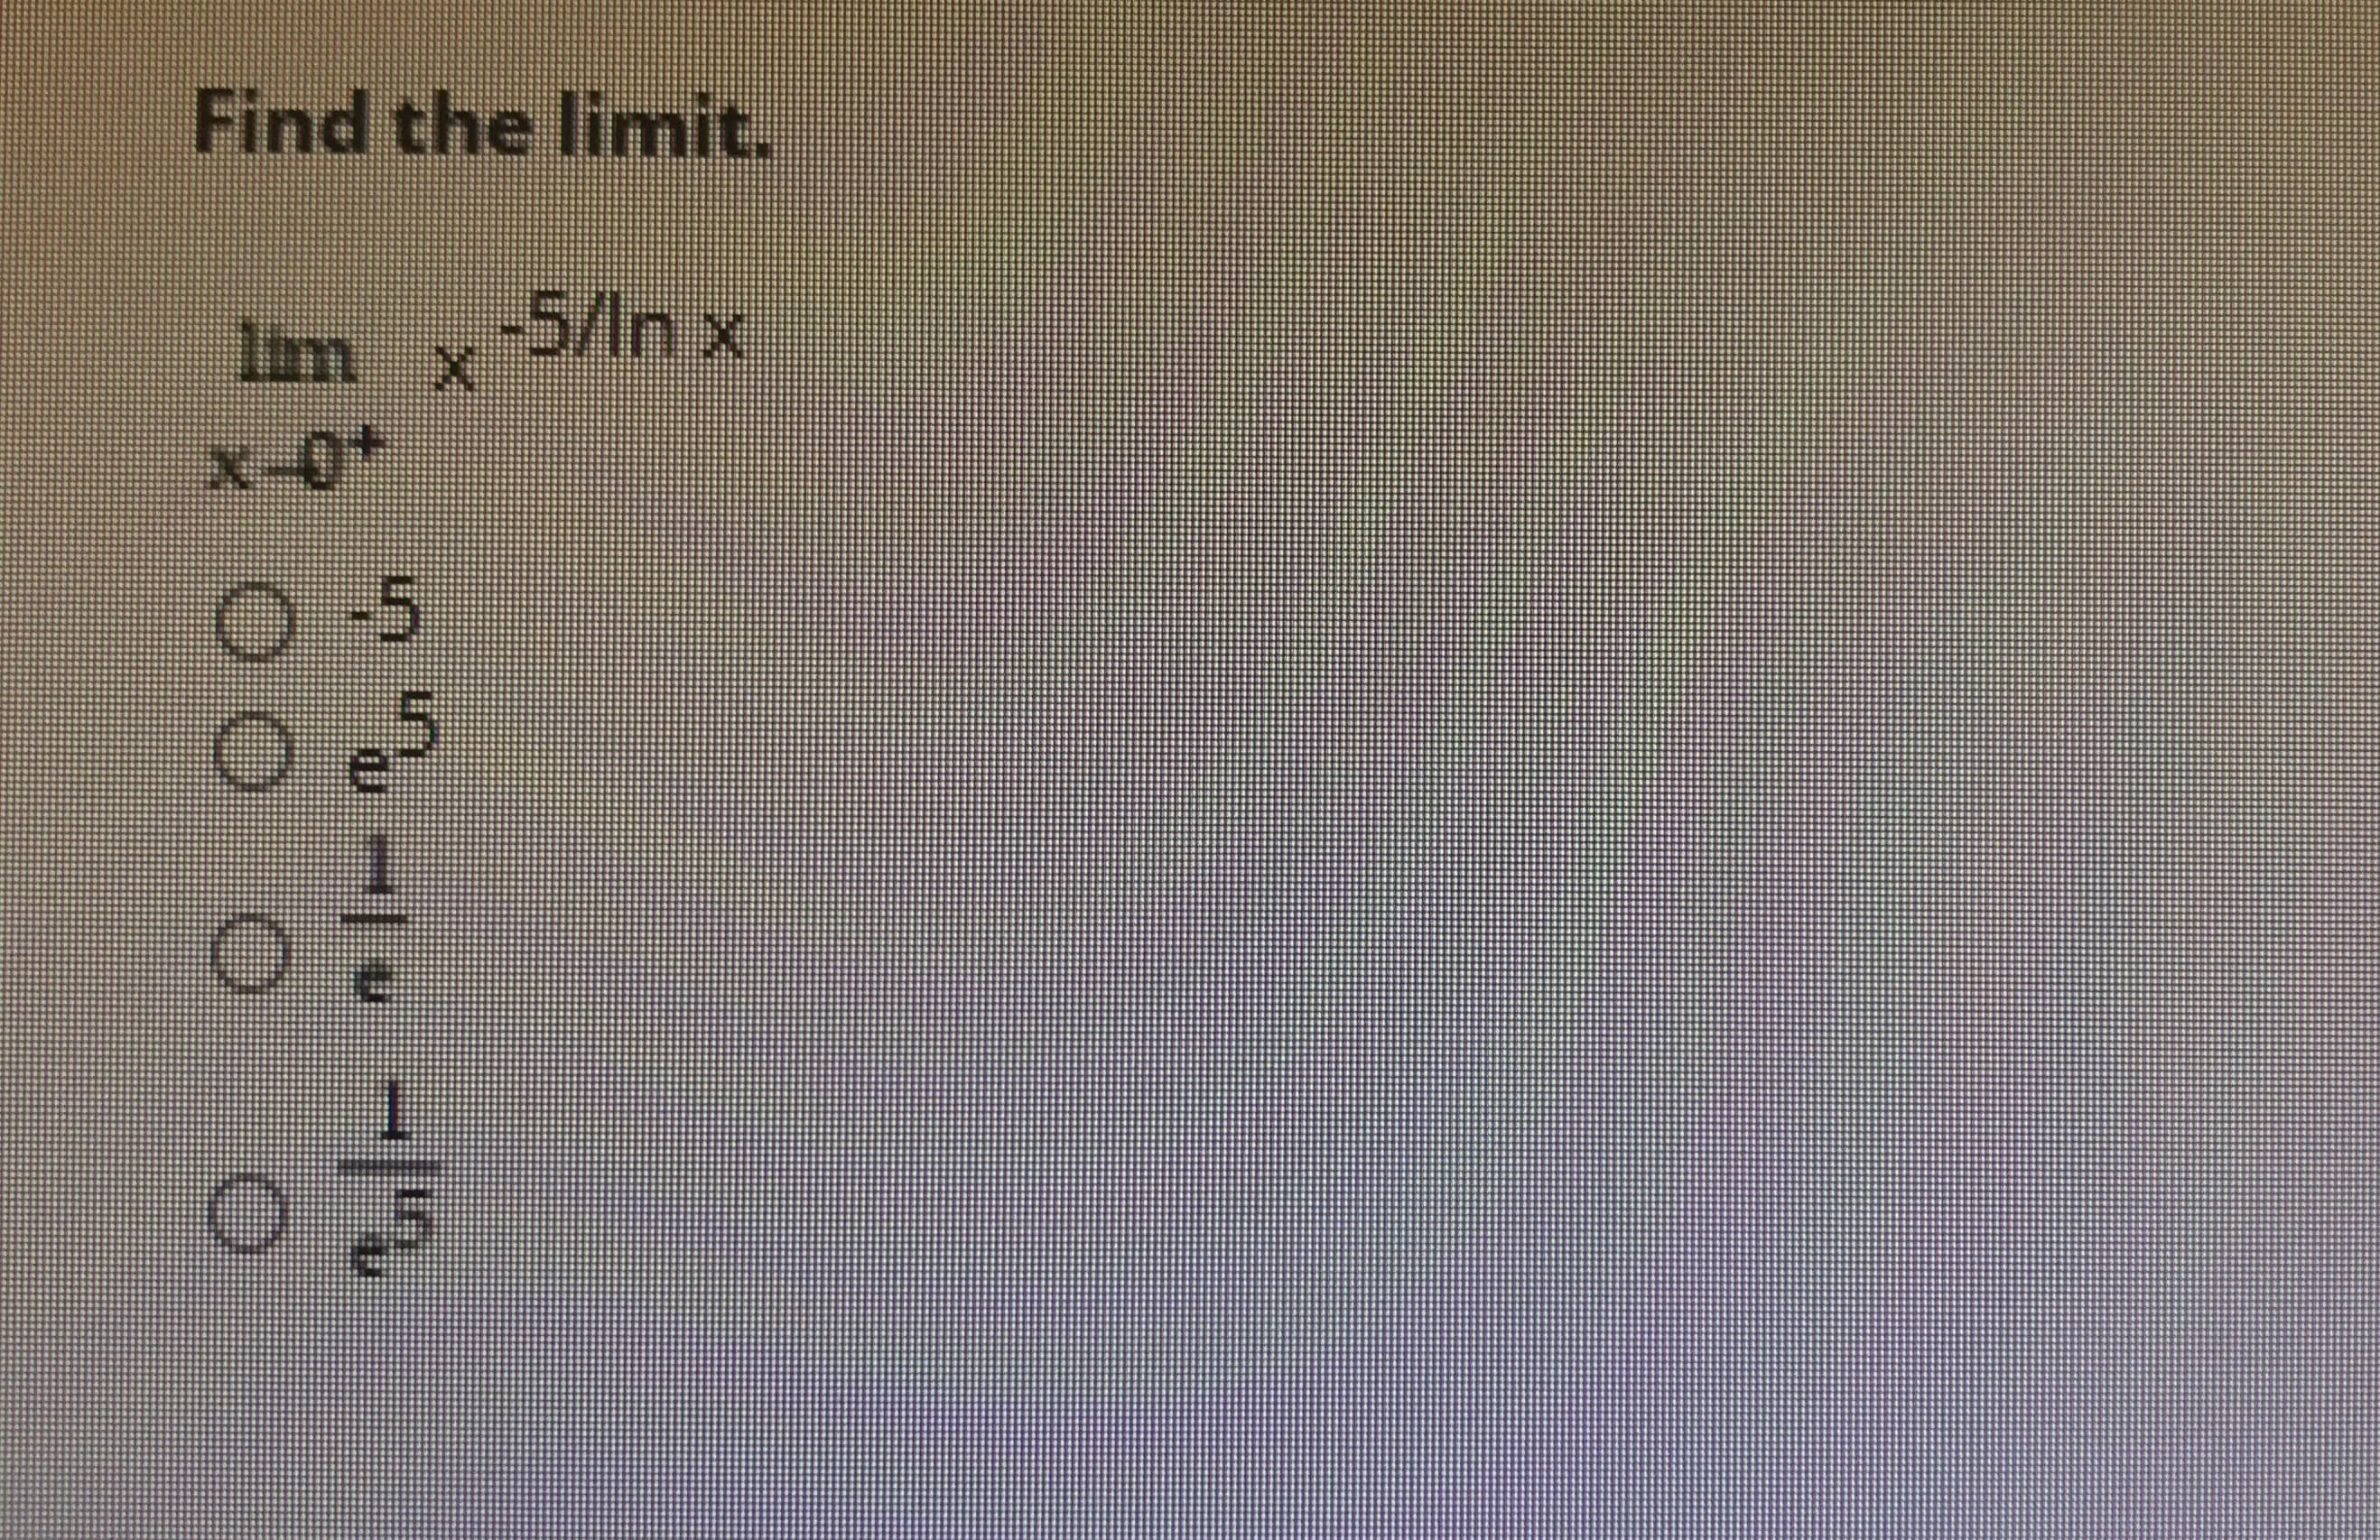 Find the limit.
Im x
-5/In x
x-0+
